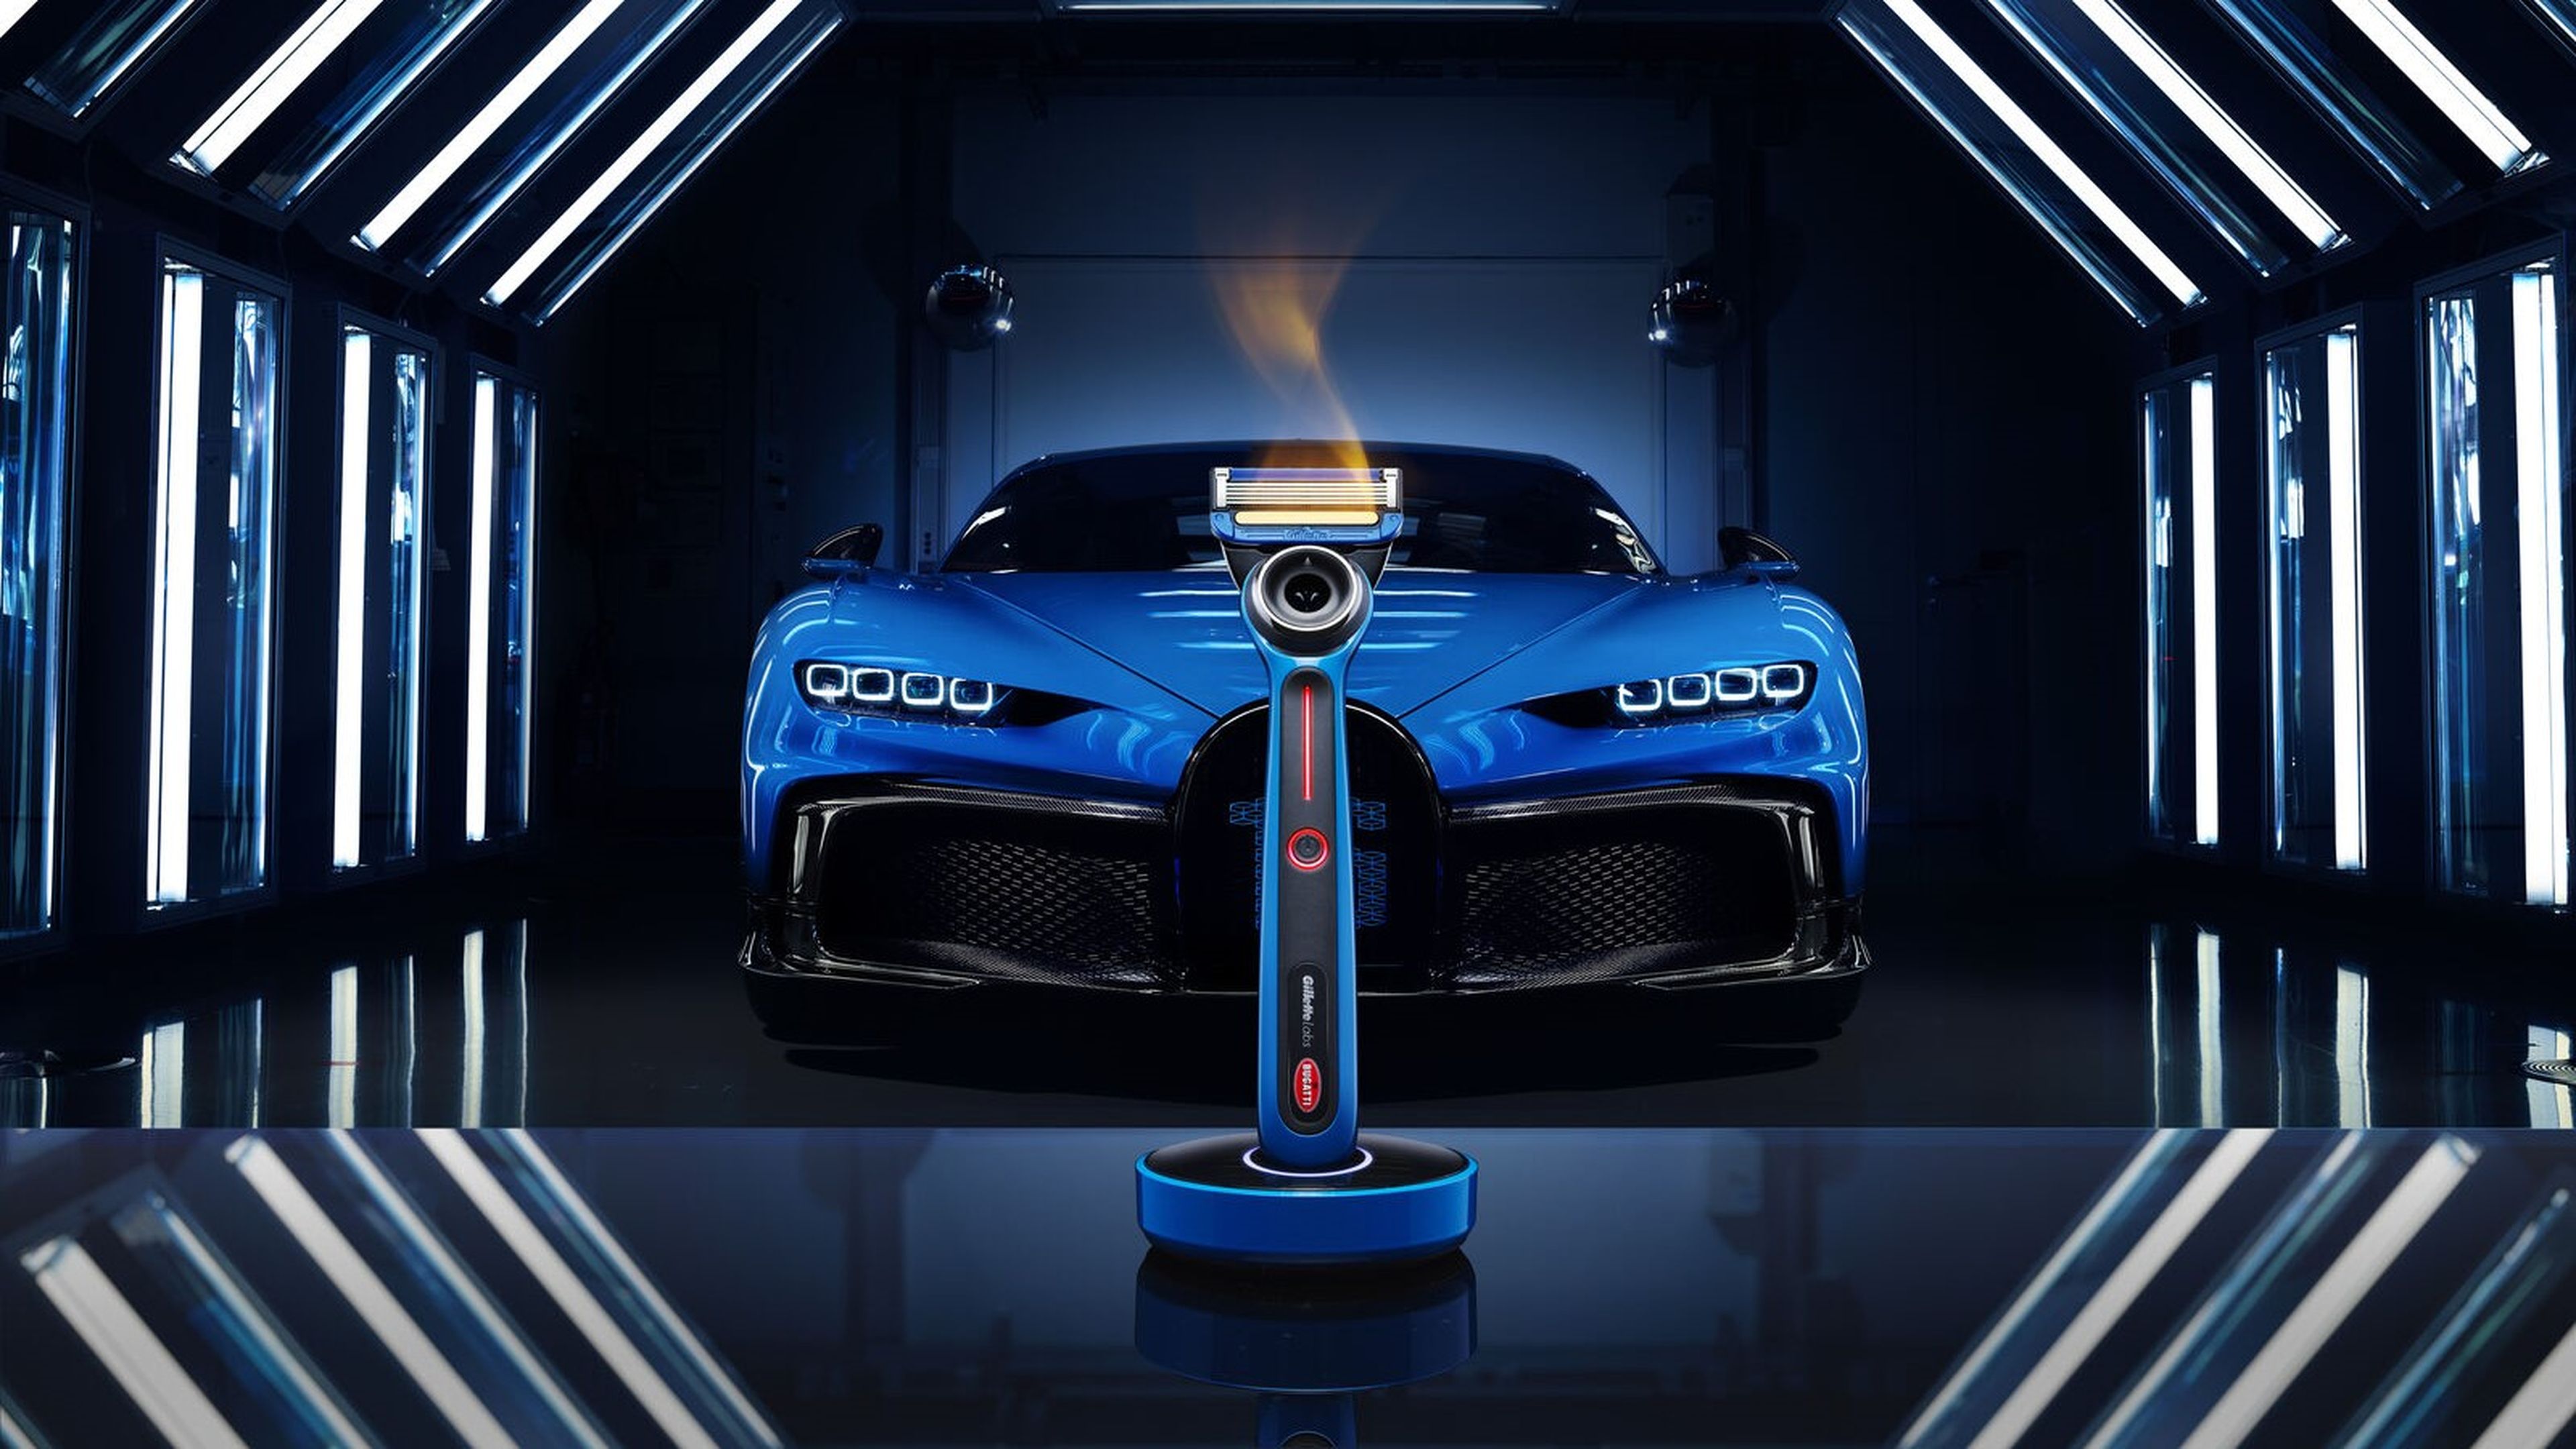 Maquinilla de afeitar de Gillette y Bugatti